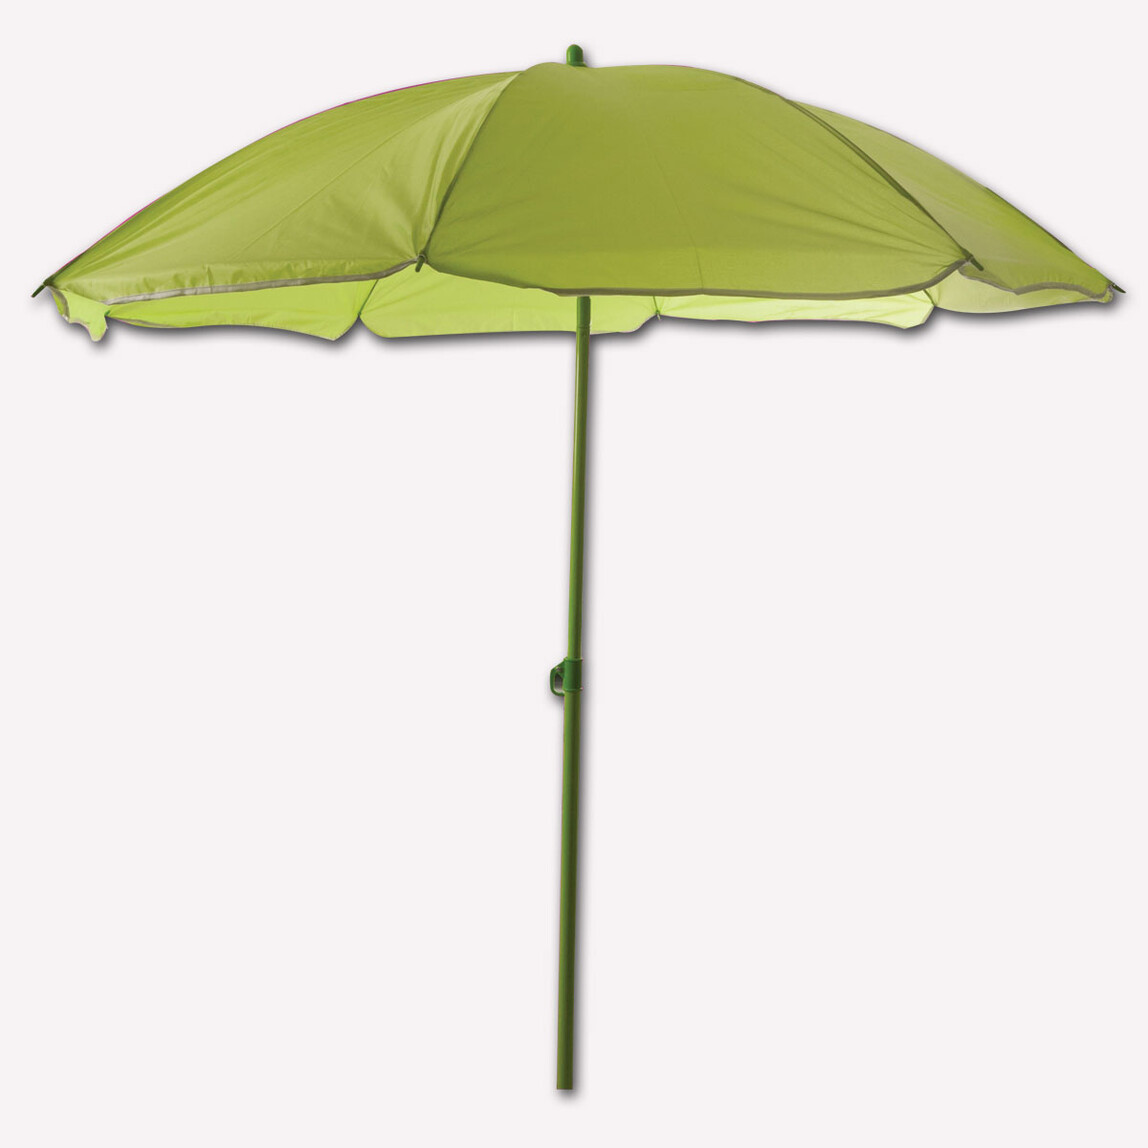    Sunfun Şemsiye Yeşil 180 cm  